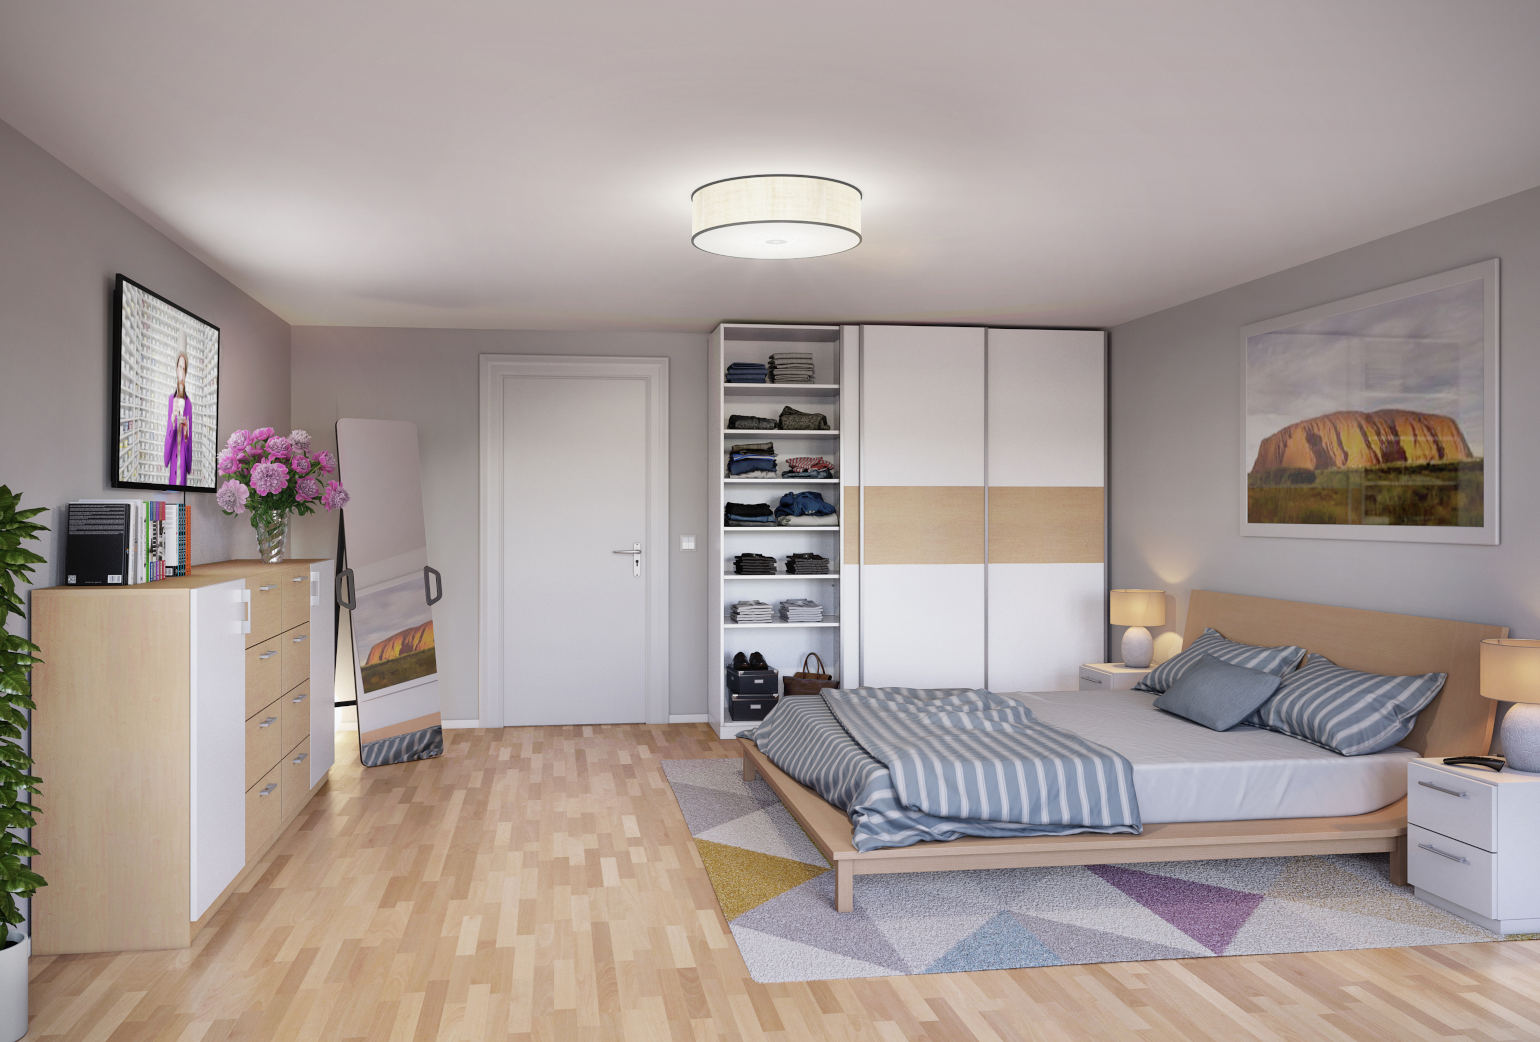 Beispiel für das Schlafzimmer mit gemütlicher Dekoration in weiße